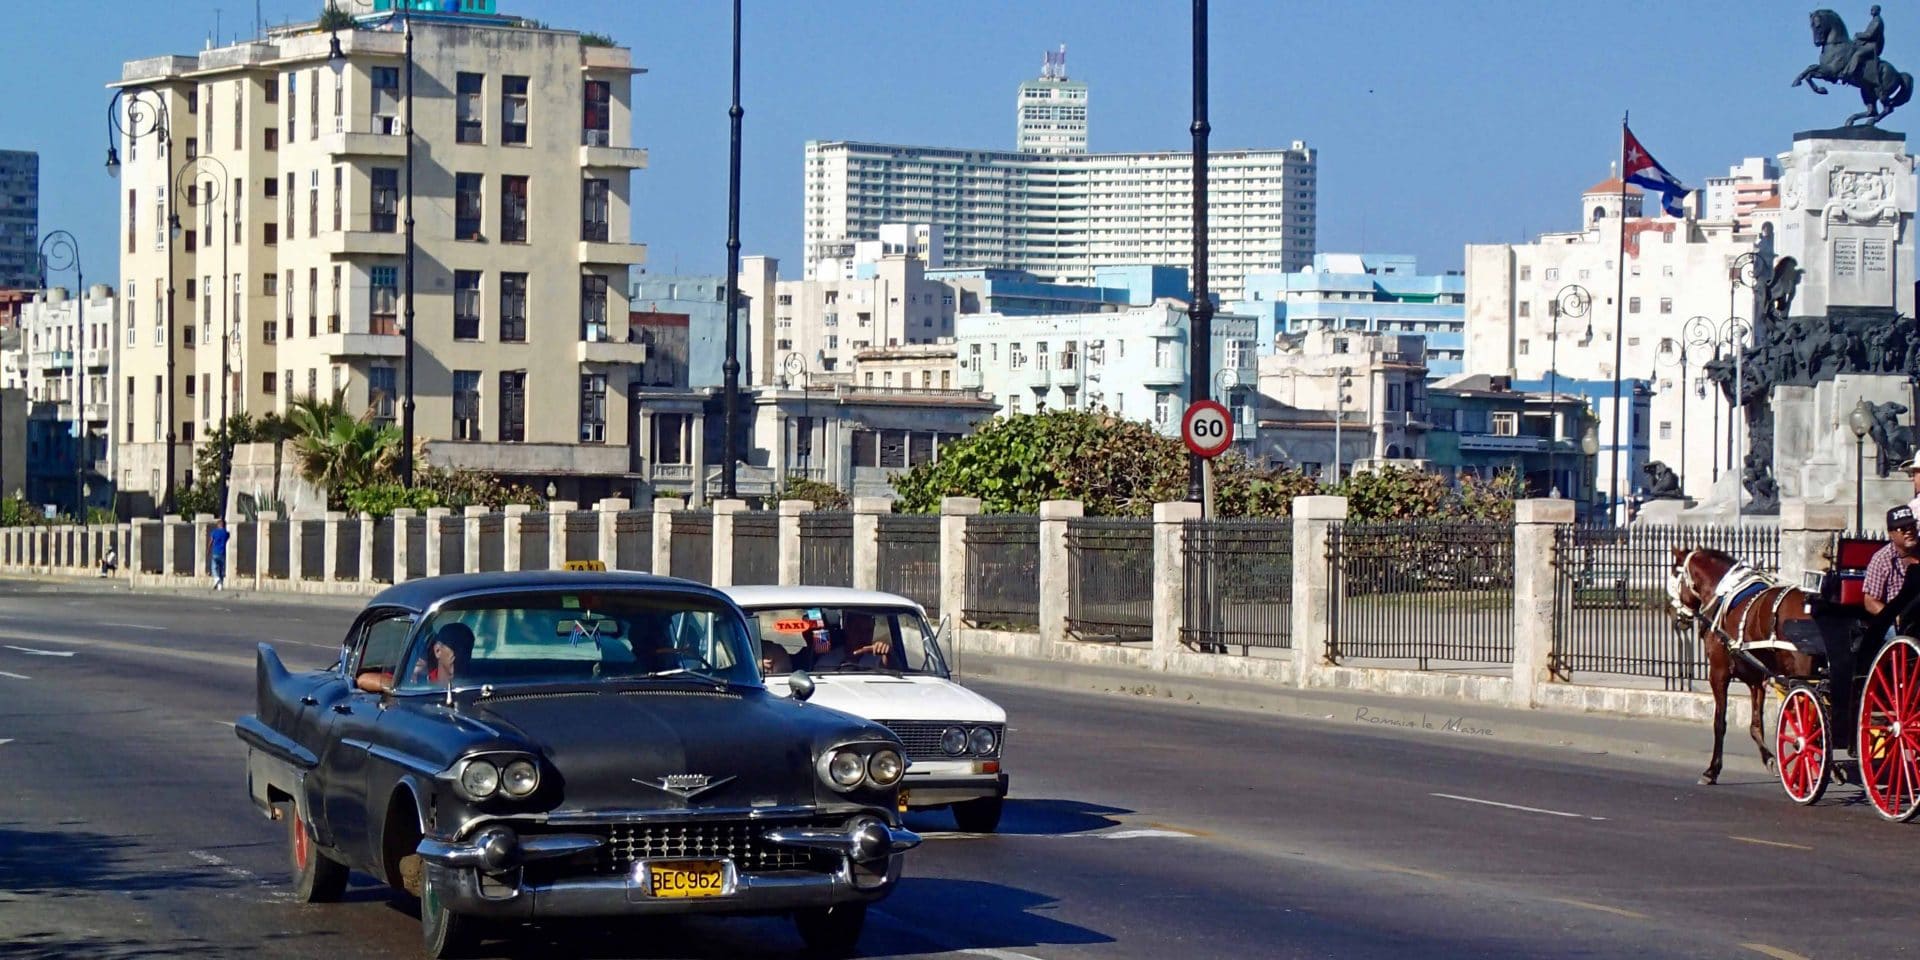 Conduciendo en el Malecón - Havana